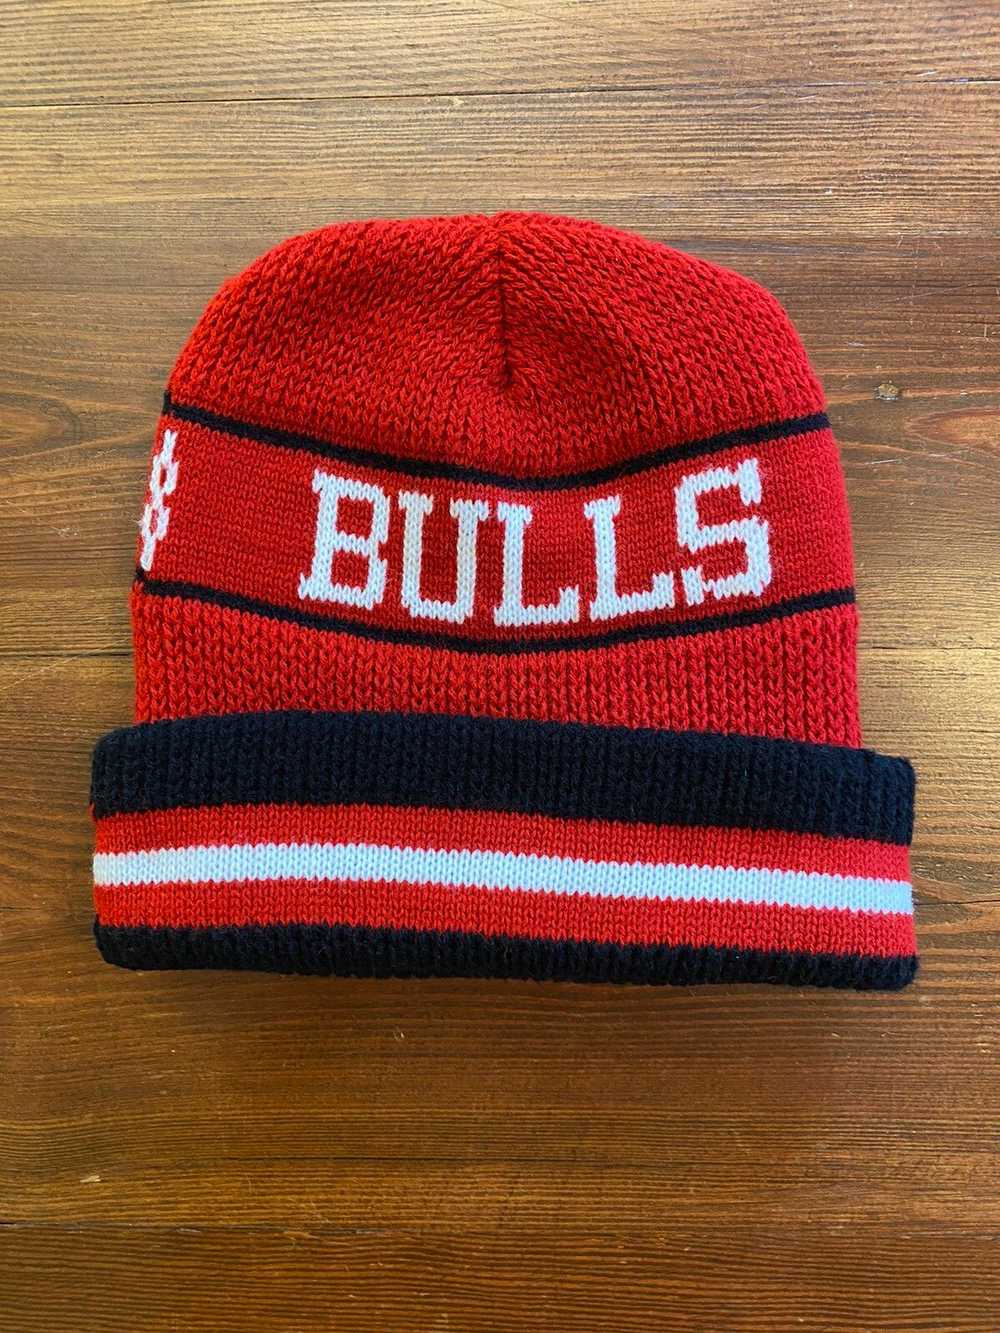 Chicago Bulls × NBA × Vintage Vintage 90’s Chicag… - image 2